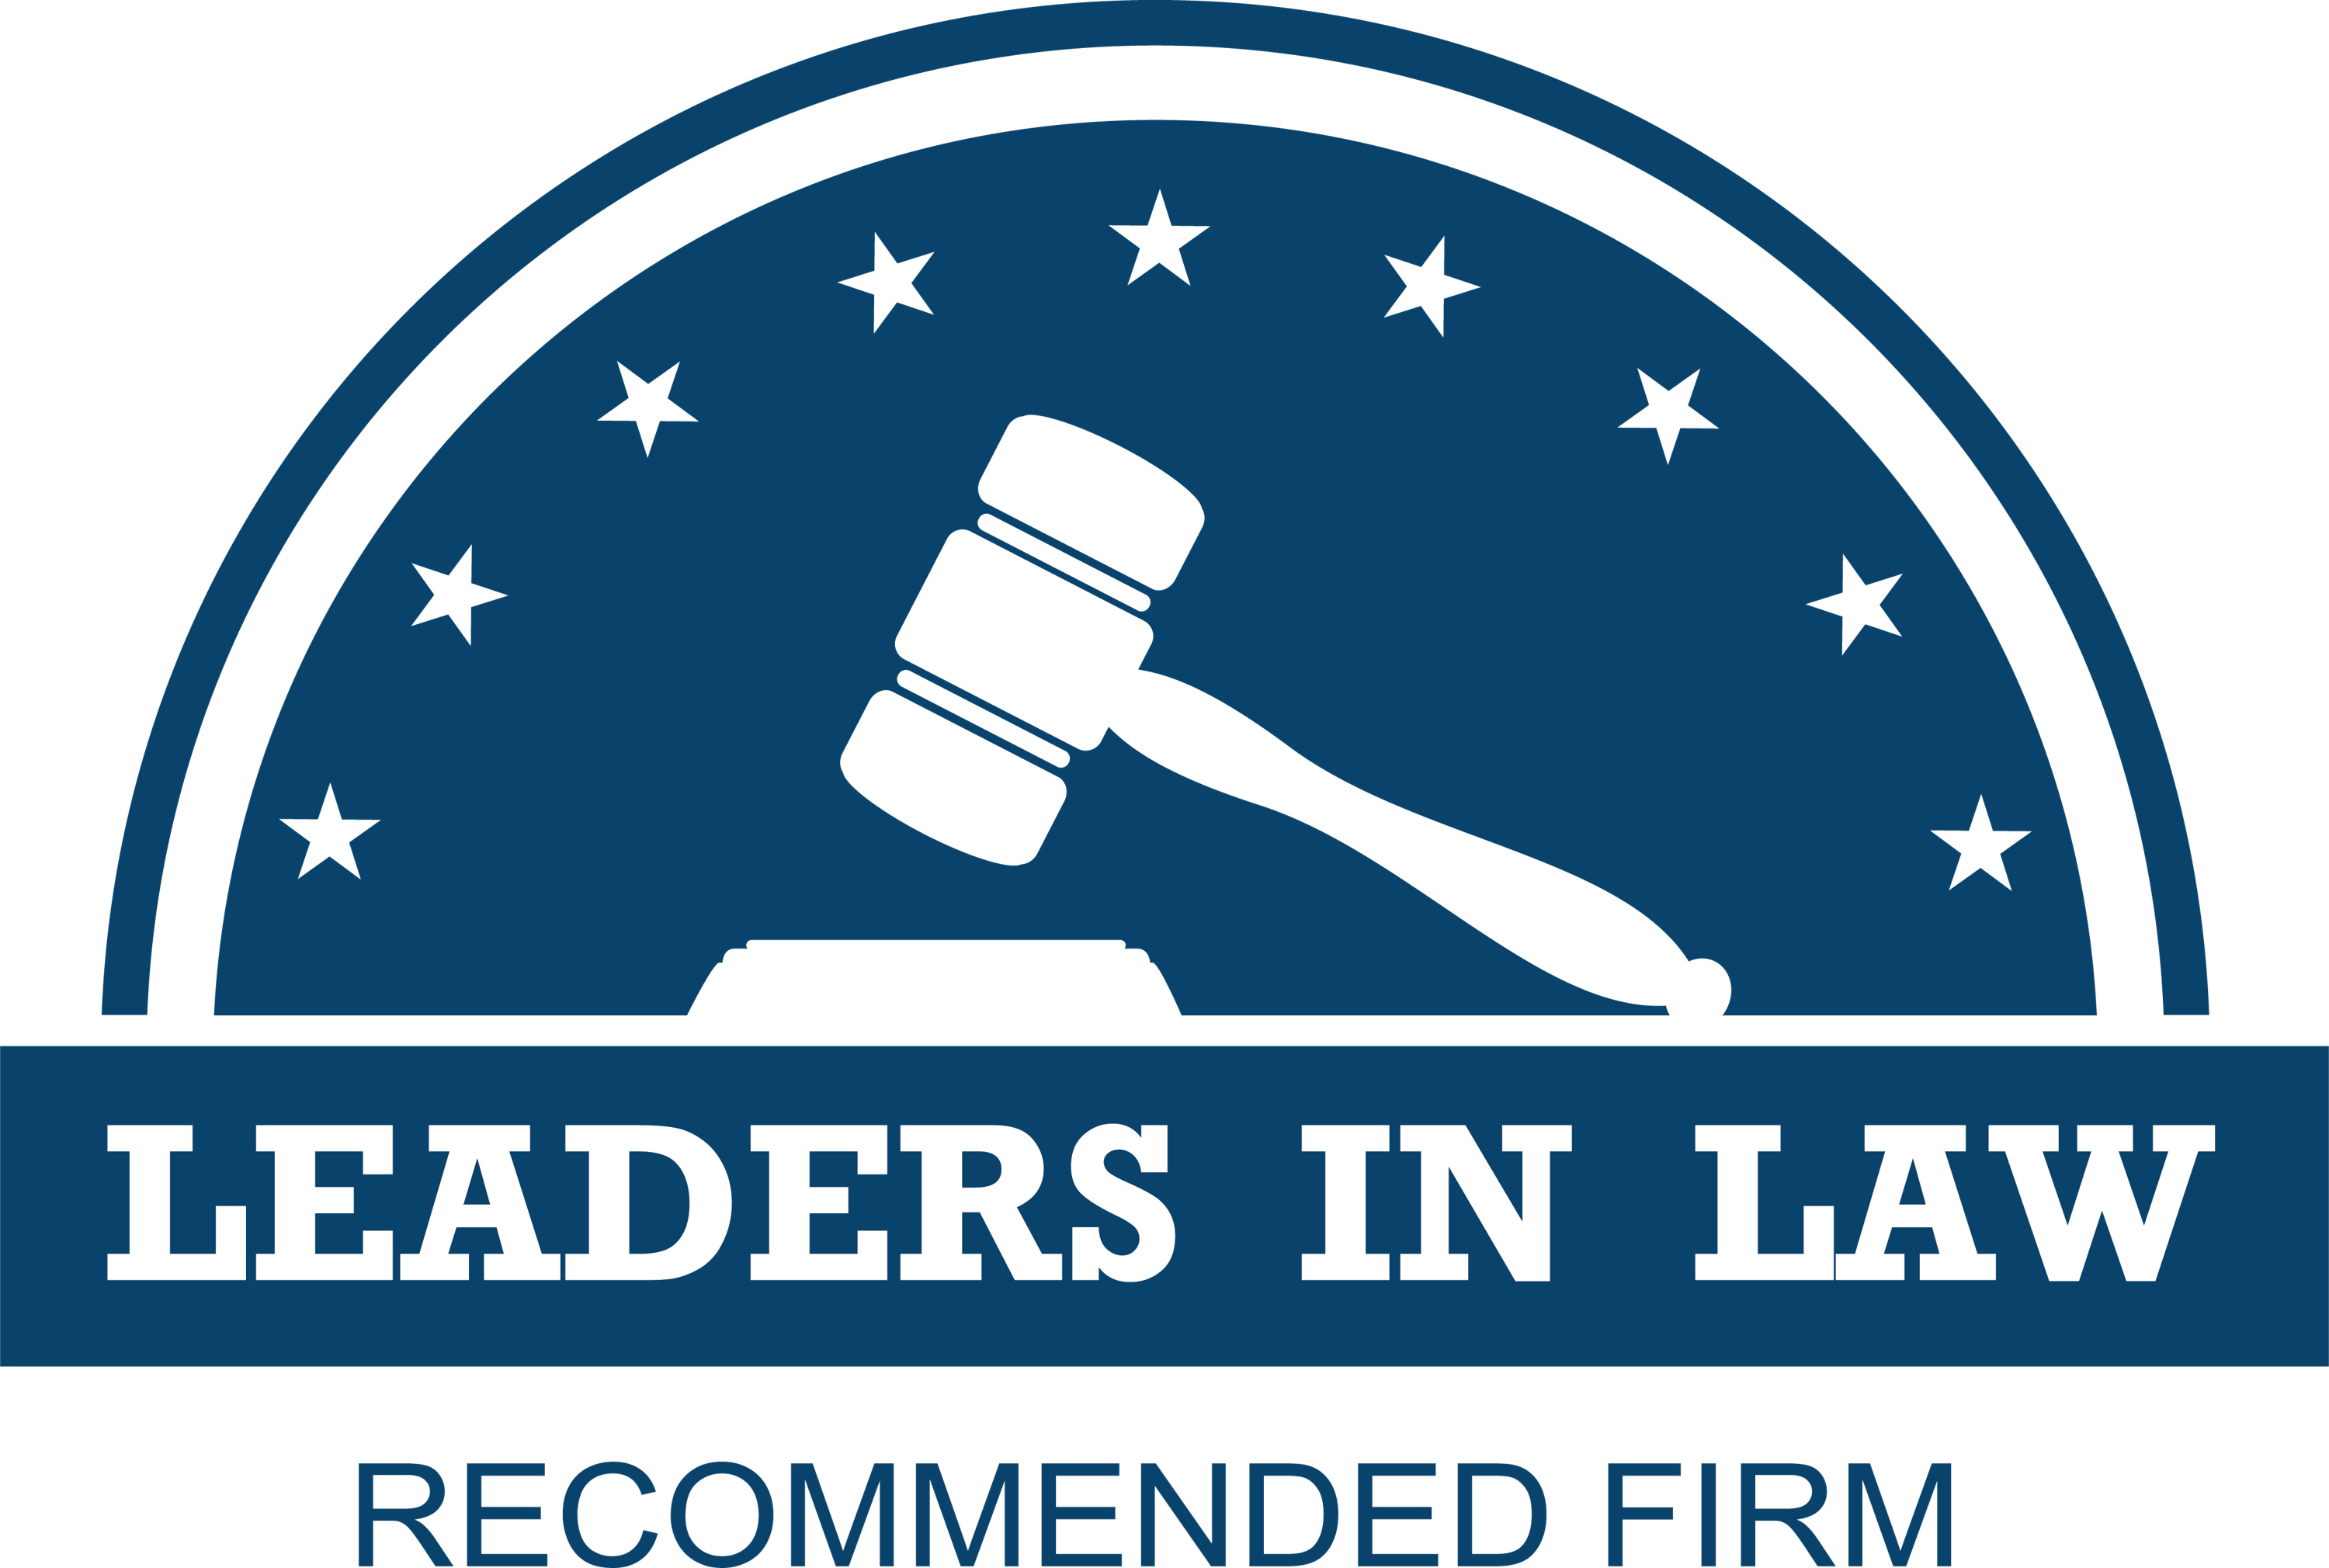 Leaders in Law 2022年度香港区兼并与收购领域的唯一认可律师事务所和法律专家